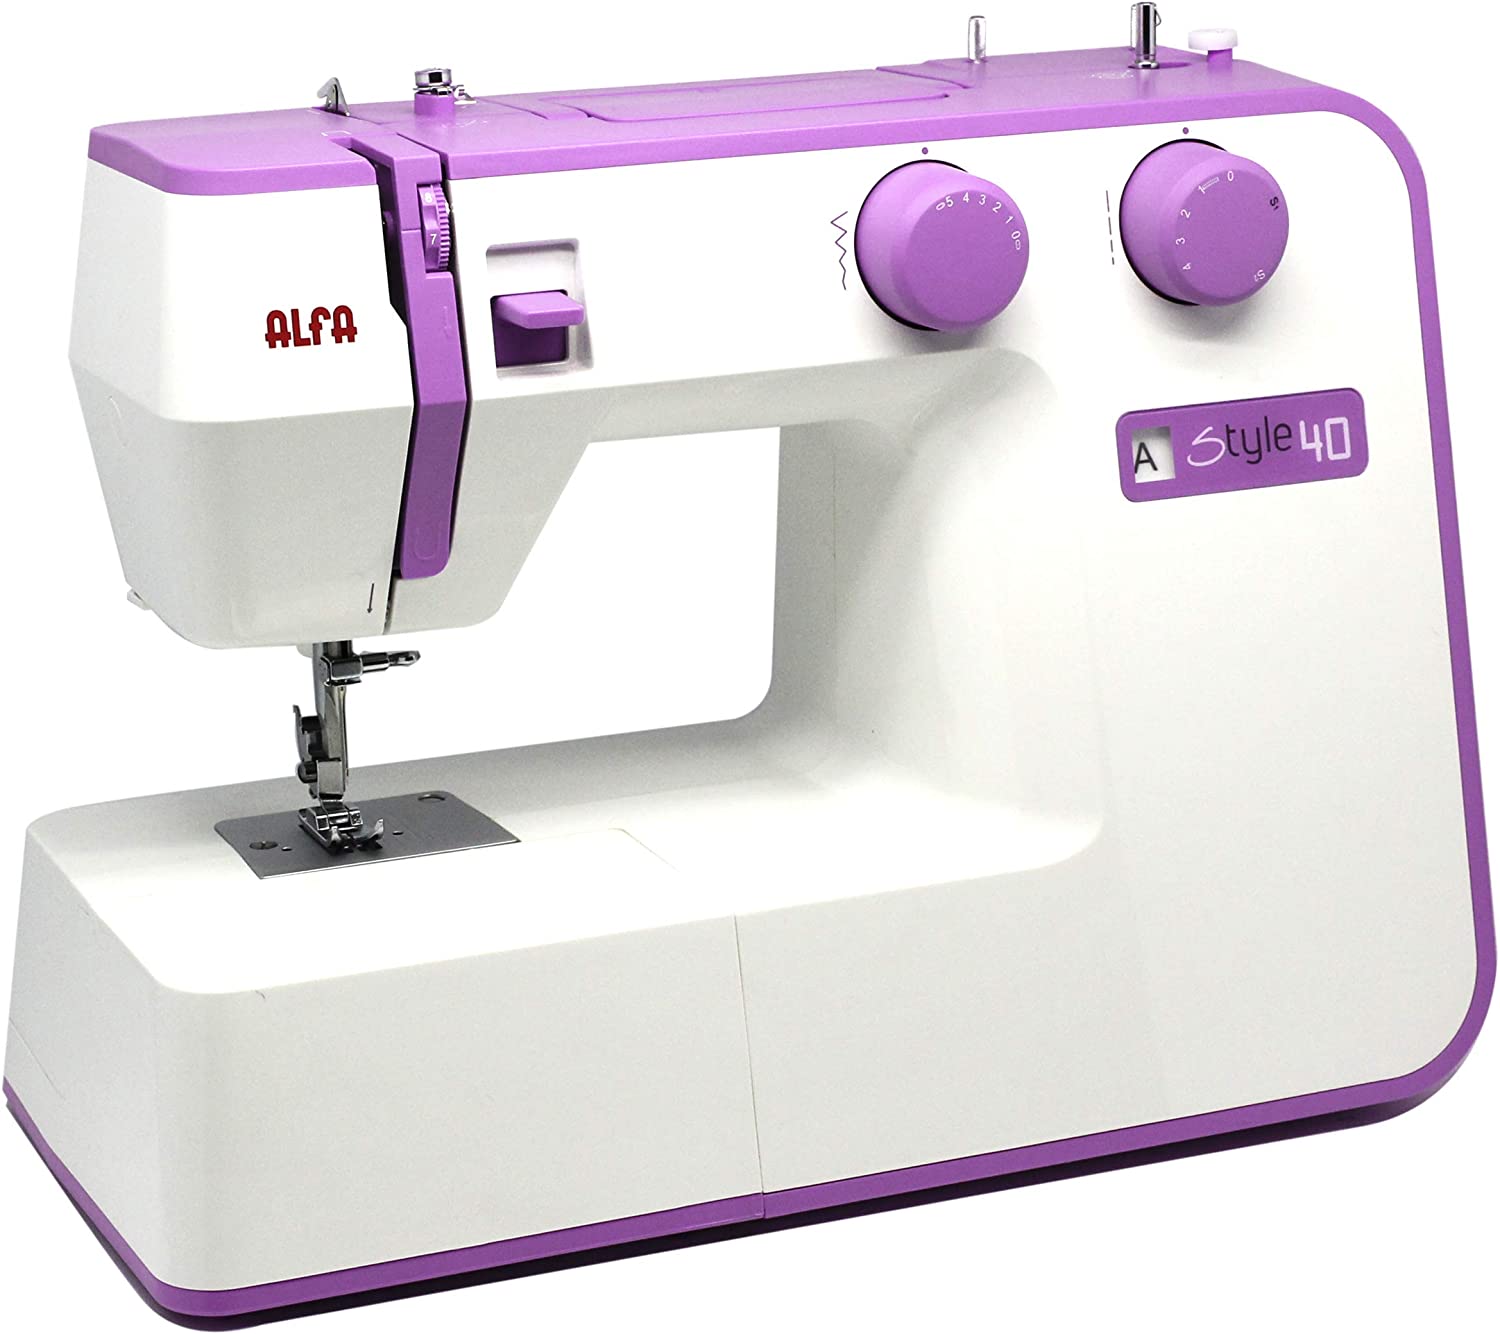 MÃ¡quina de coser Alfa Style 40